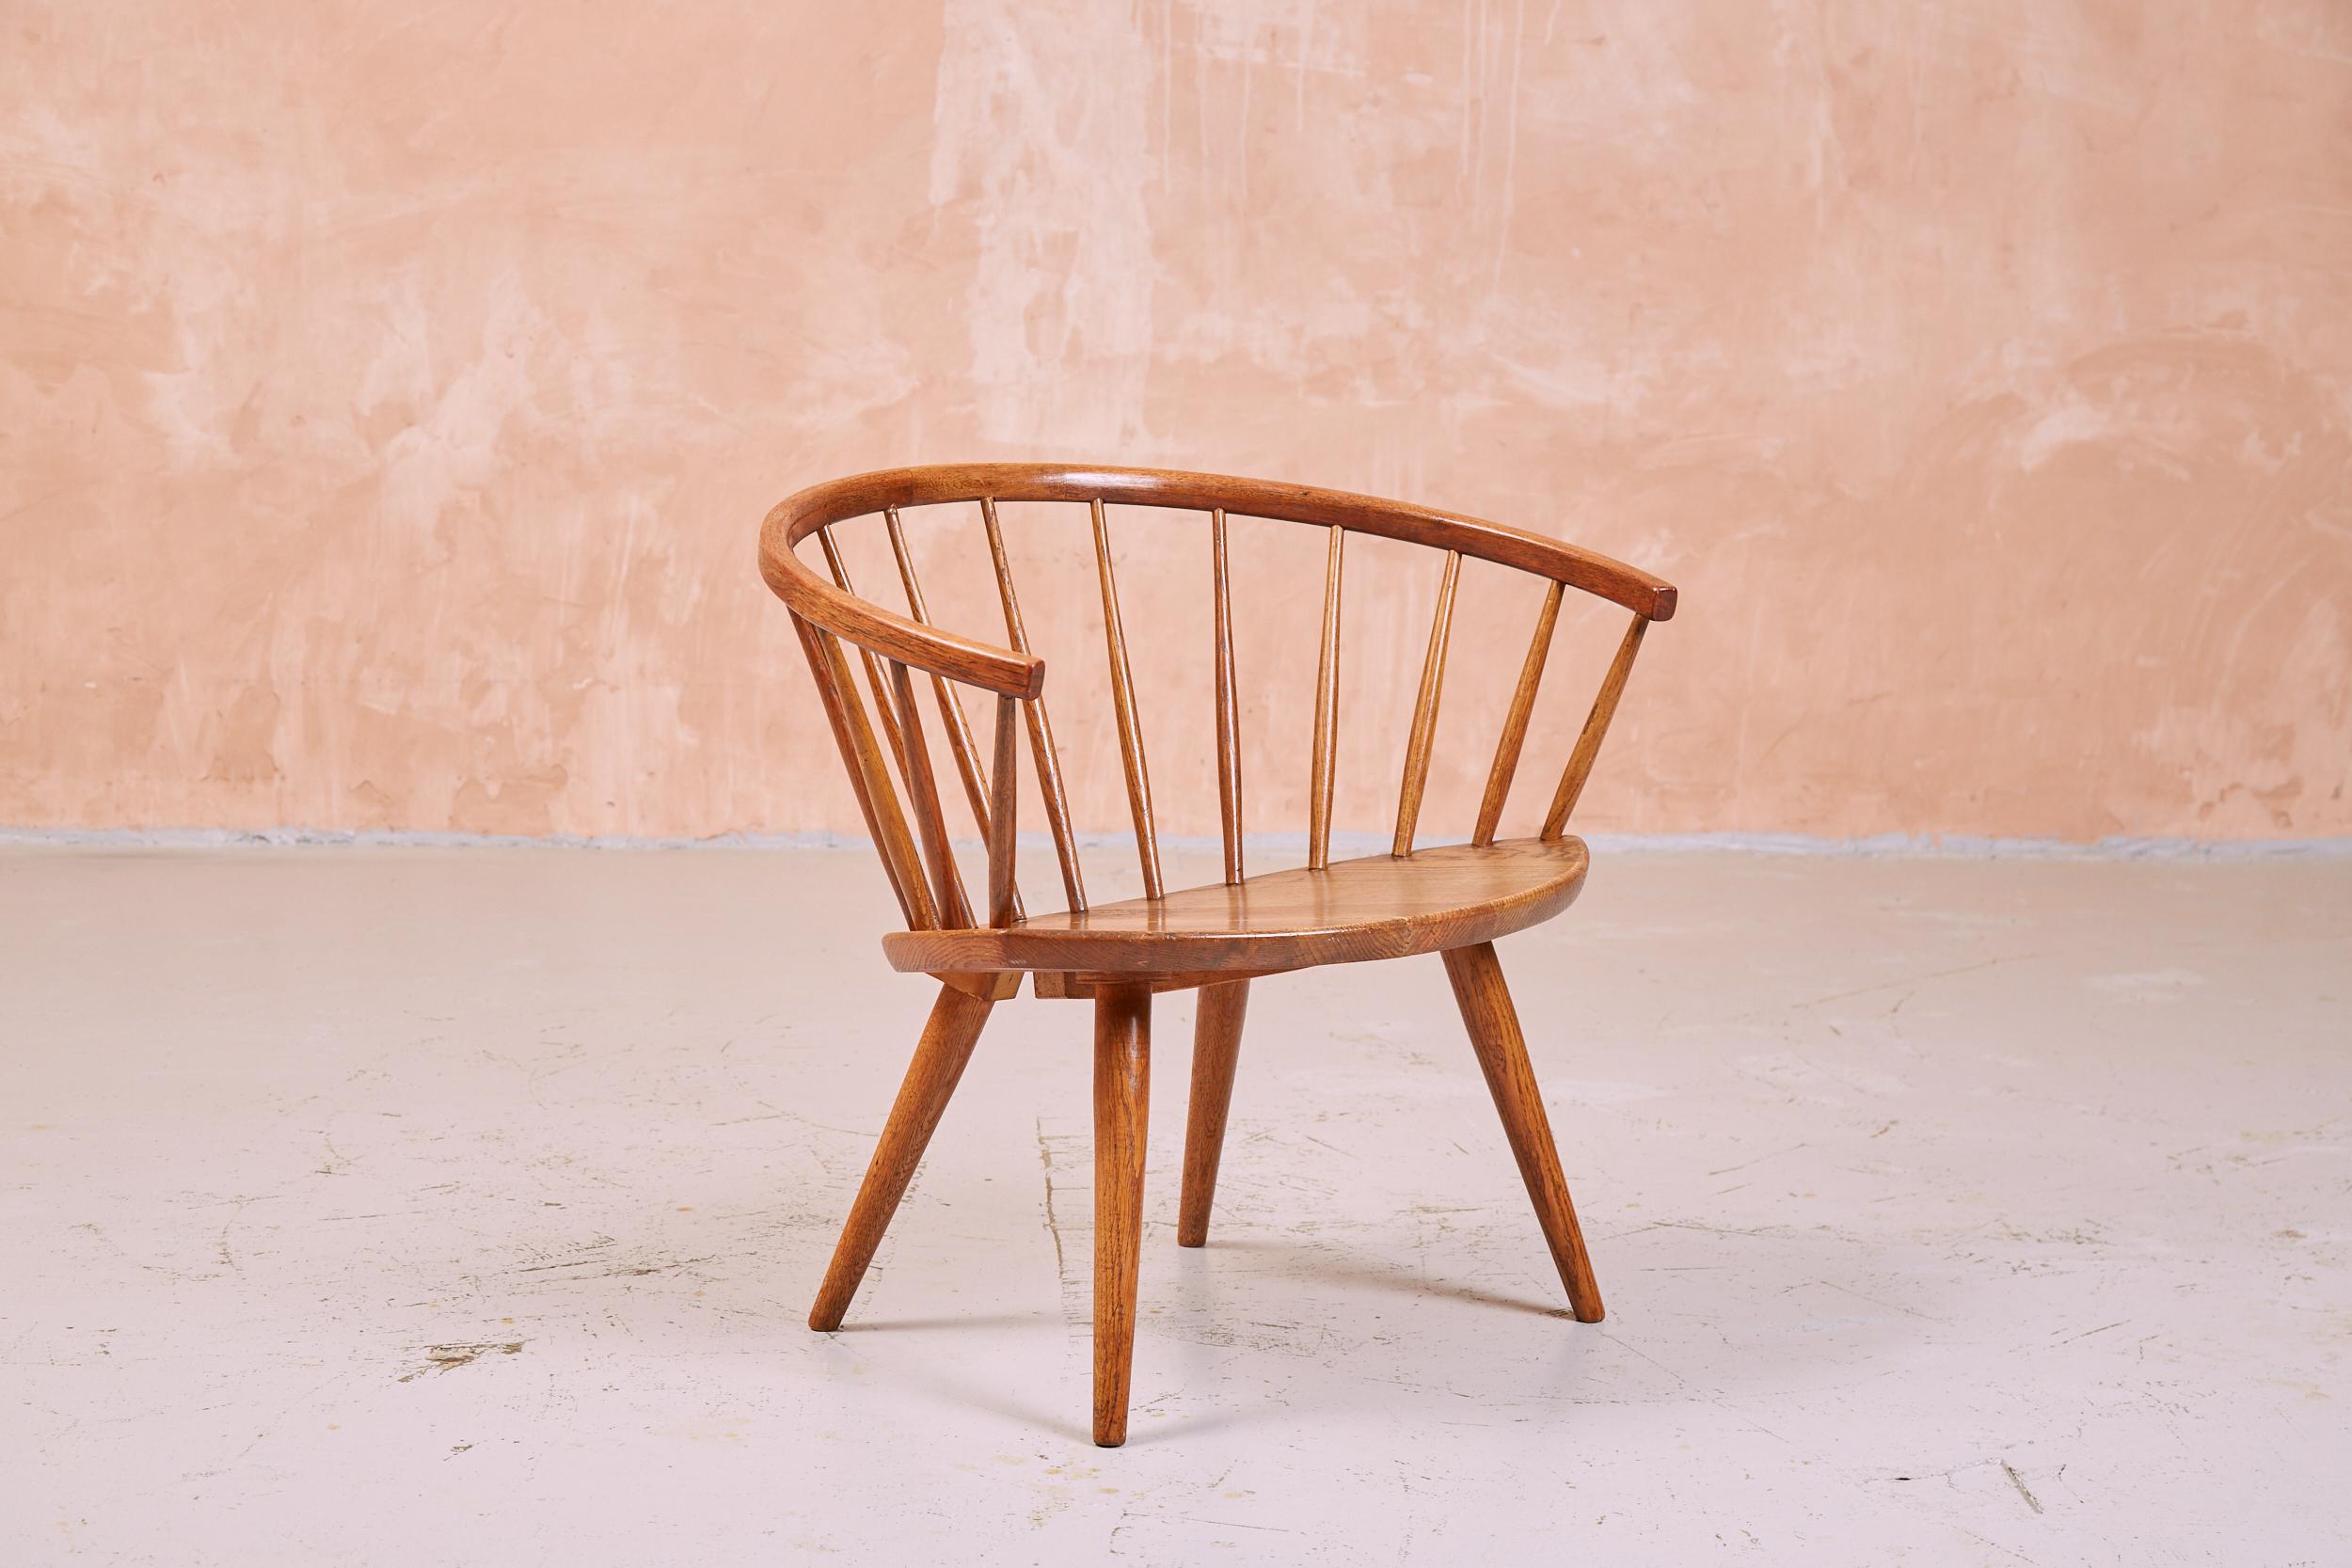 Magnifique chaise longue sculpturale conçue par Yngve Ekström.
Meubles suédois simples et élégants, en bois de chêne très attrayant et chaleureux.
Dossier élégamment incurvé et assise elliptique sur pieds fuselés.

Fabriqué par AB